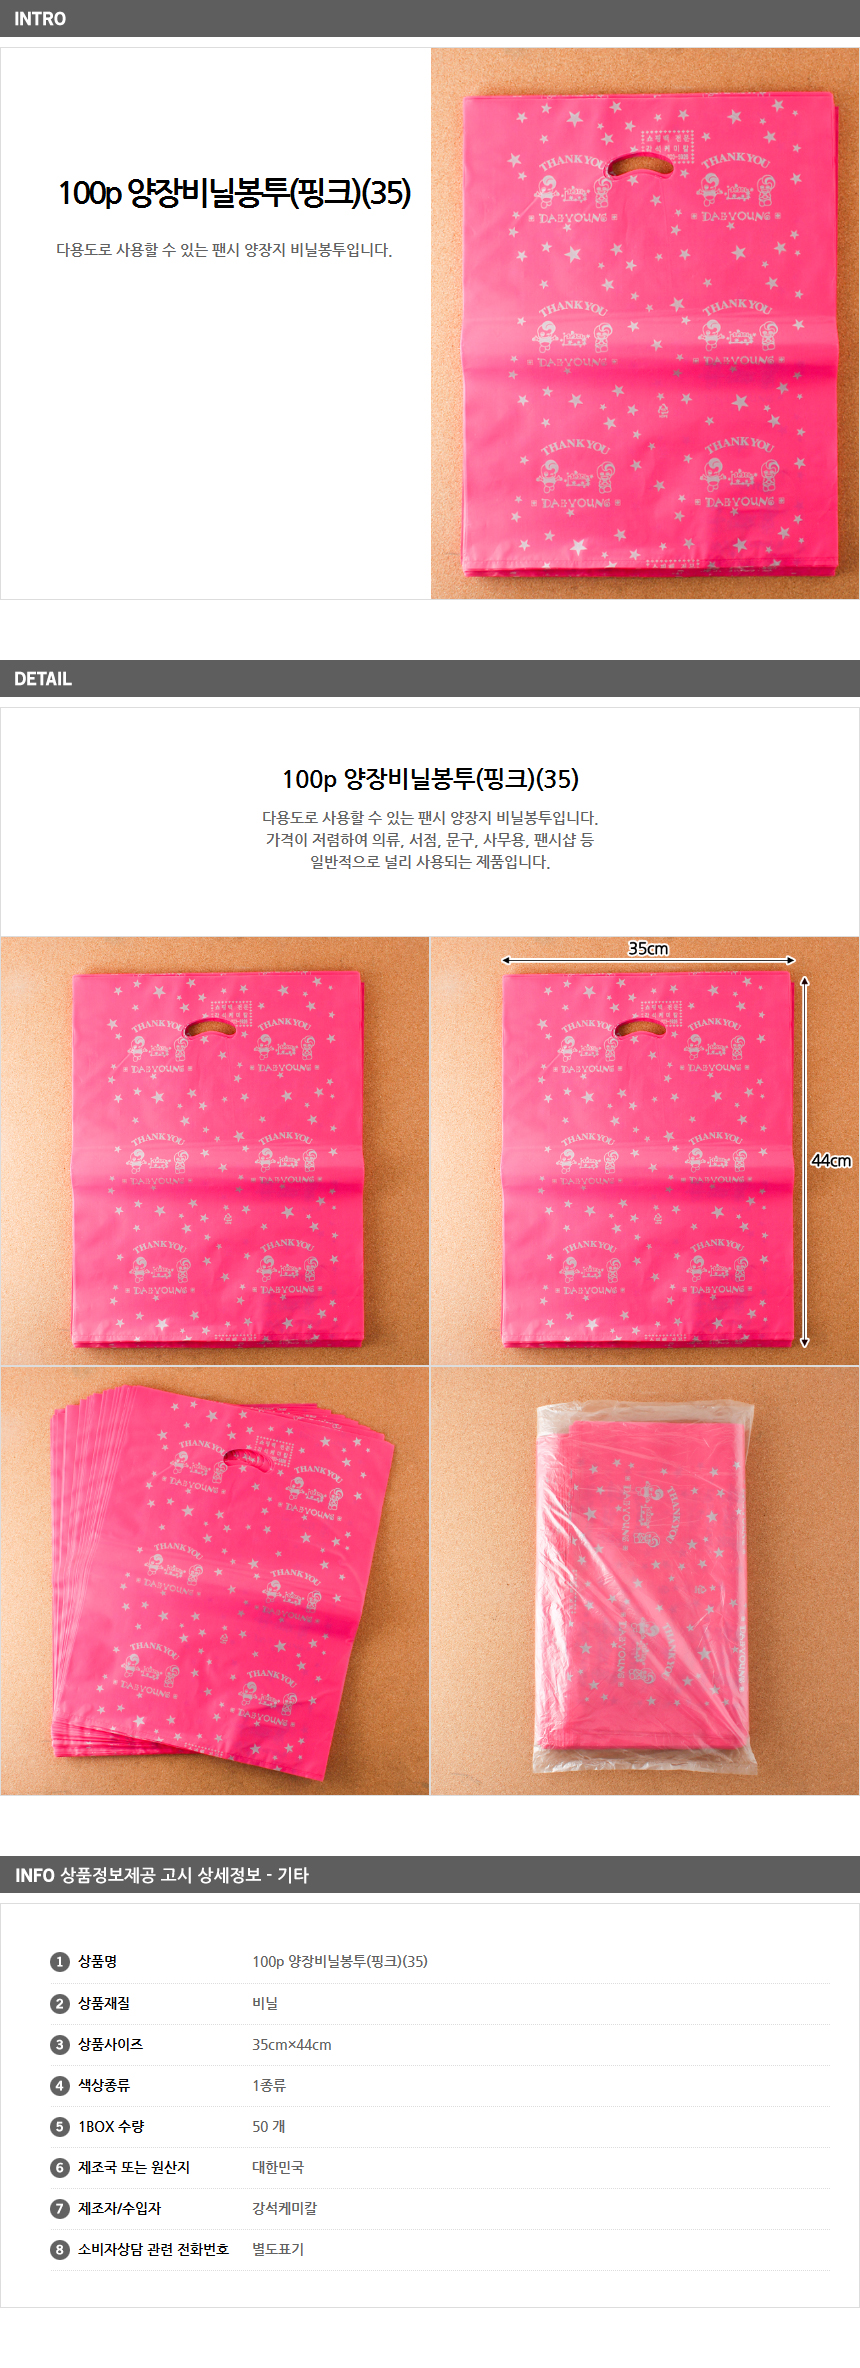 100p 팬시비닐봉투 35/ 의류매장 쇼핑백 쇼핑비닐봉투